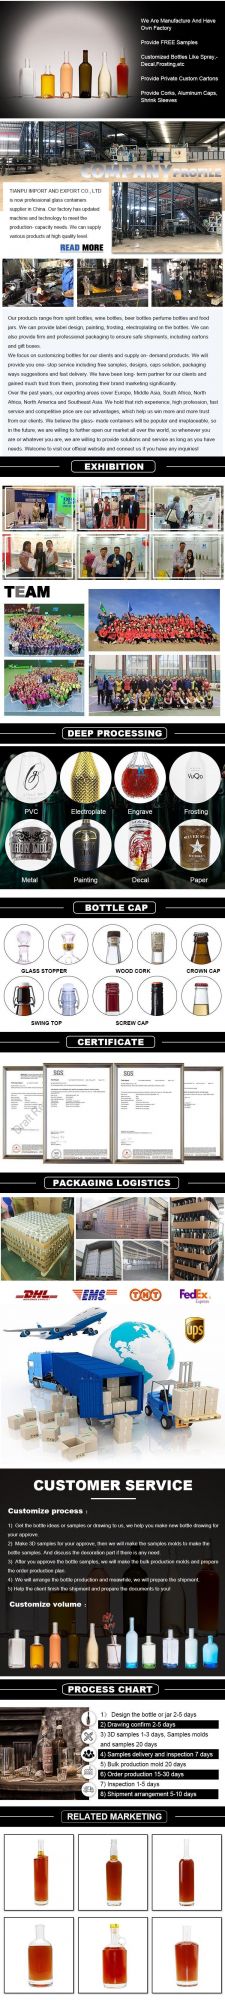 50ml 100ml 200ml Glass Bottle for Coffee Mini Wine Spirit Liquor Bottle Spirits